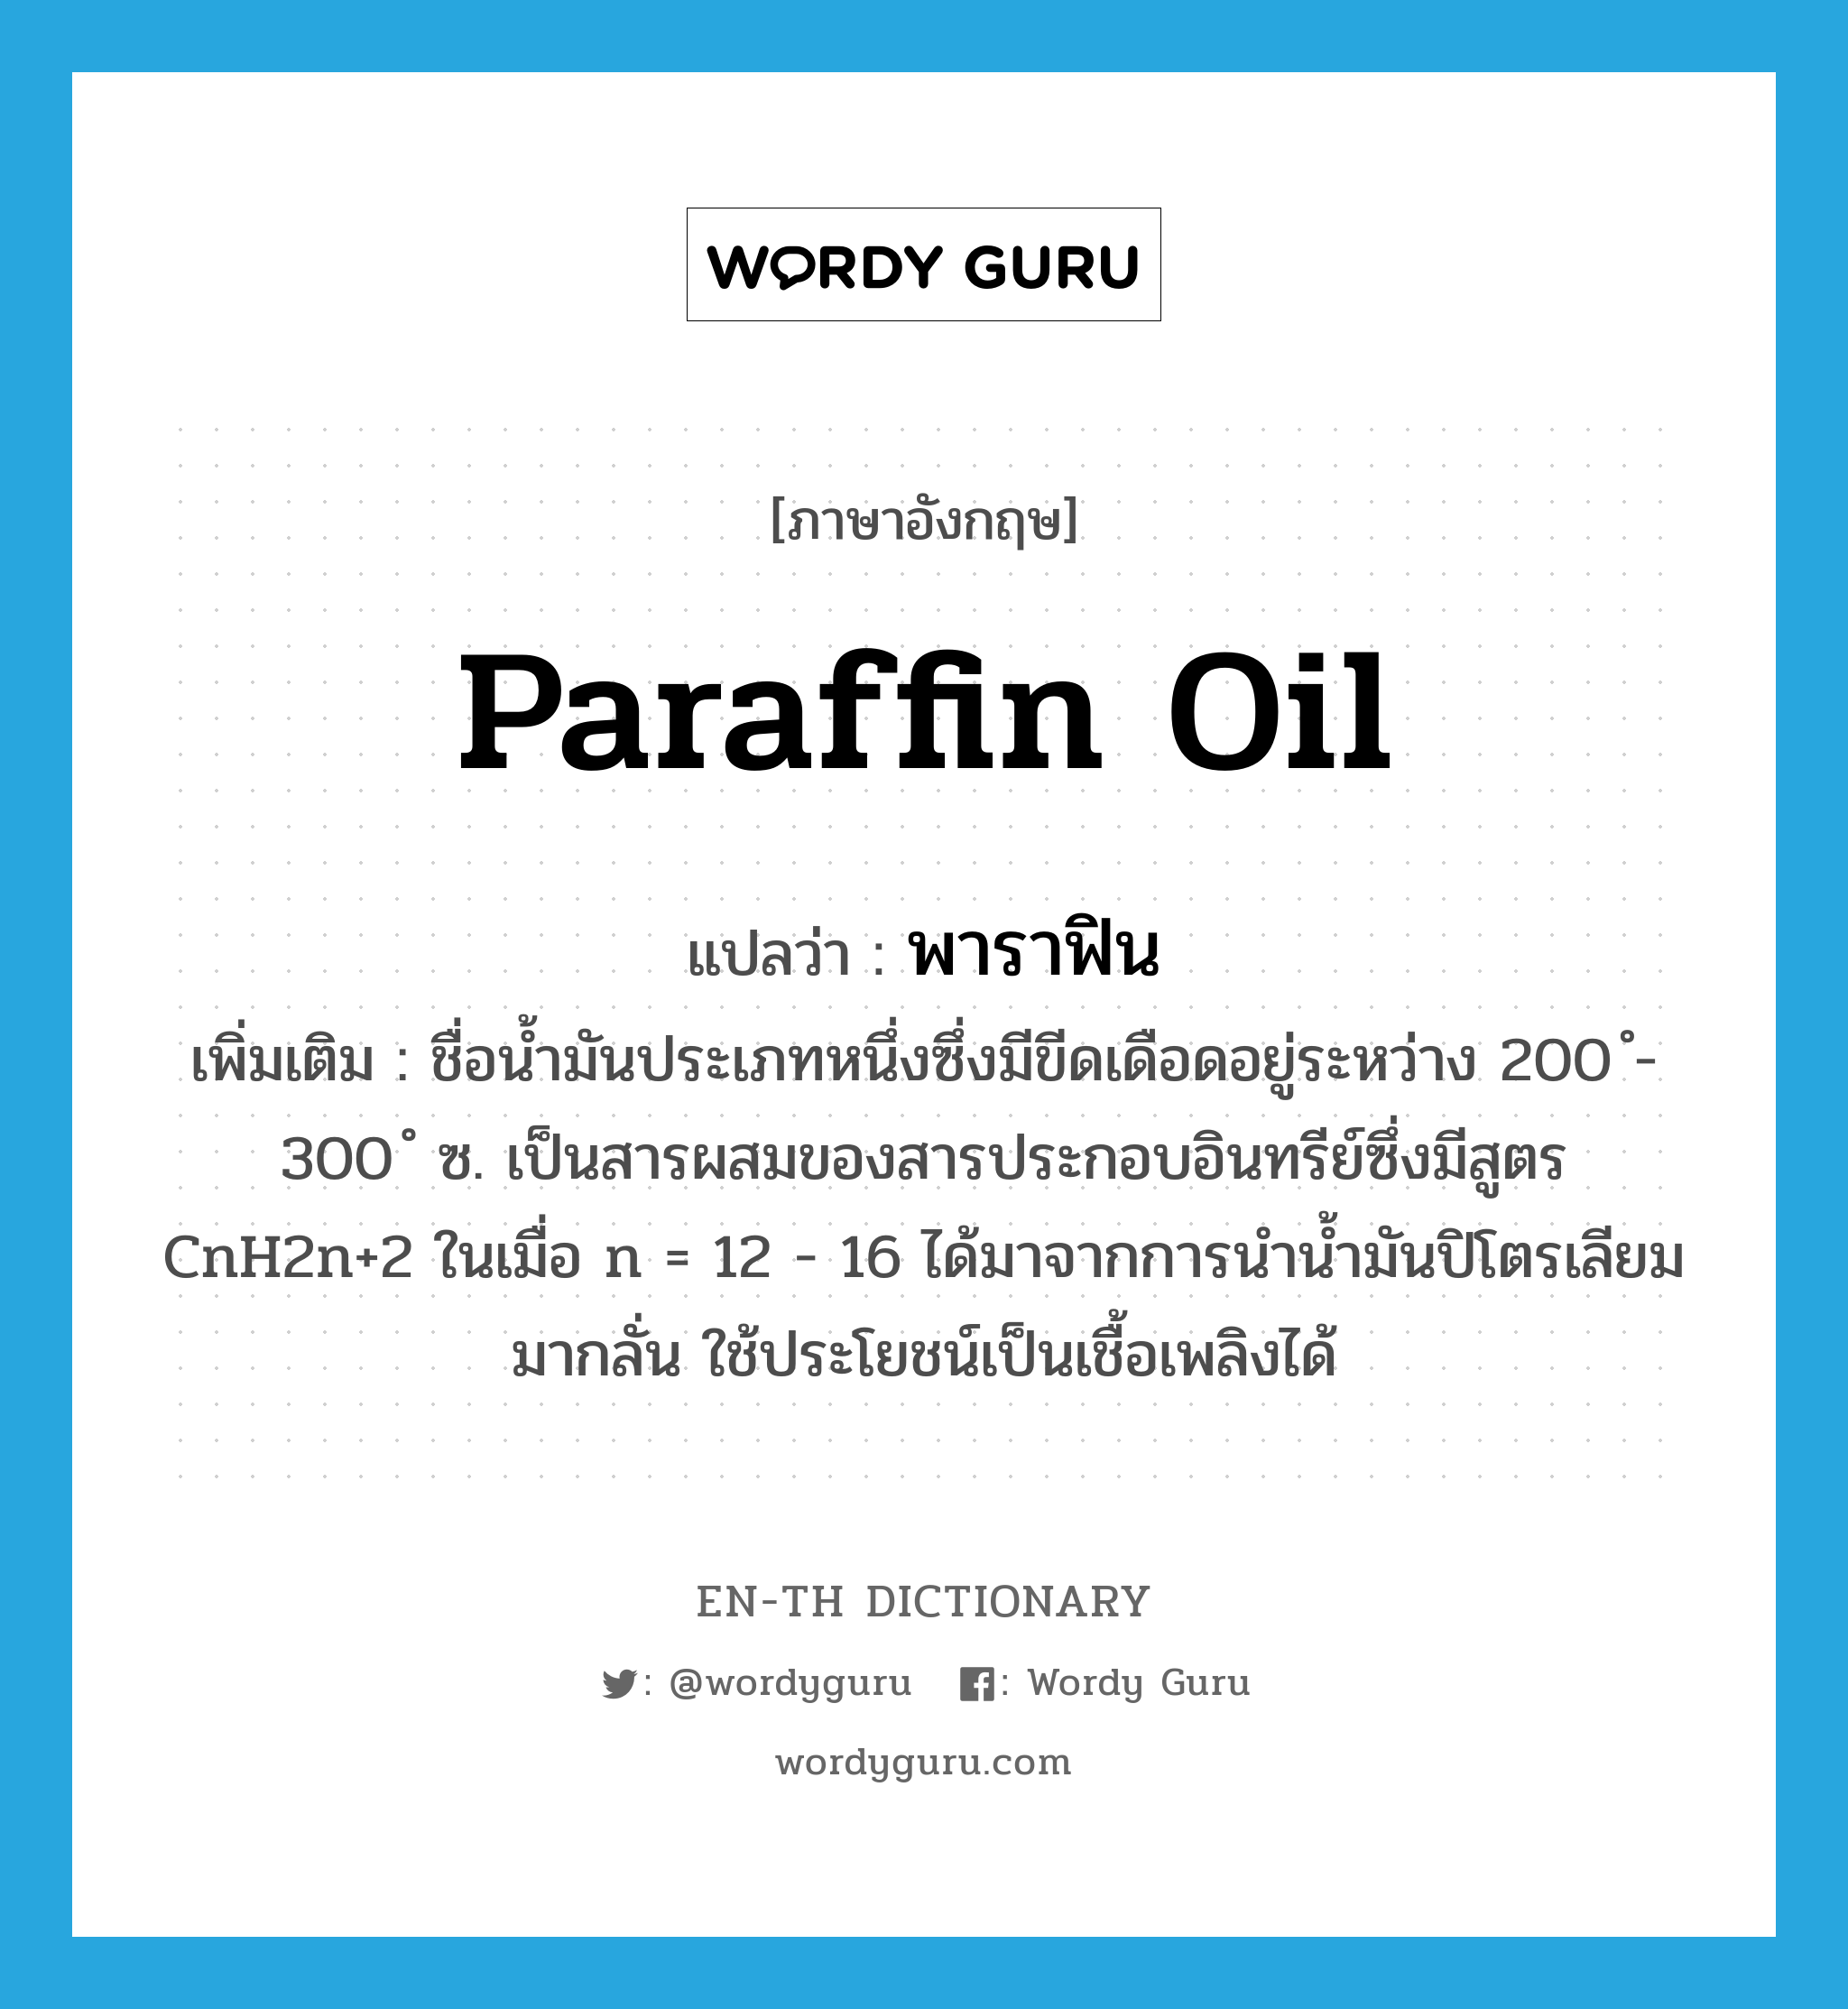 paraffin oil แปลว่า?, คำศัพท์ภาษาอังกฤษ paraffin oil แปลว่า พาราฟิน ประเภท N เพิ่มเติม ชื่อน้ำมันประเภทหนึ่งซึ่งมีขีดเดือดอยู่ระหว่าง 200 ํ- 300 ํ ซ. เป็นสารผสมของสารประกอบอินทรีย์ซึ่งมีสูตร CnH2n+2 ในเมื่อ n = 12 - 16 ได้มาจากการนำน้ำมันปิโตรเลียมมากลั่น ใช้ประโยชน์เป็นเชื้อเพลิงได้ หมวด N